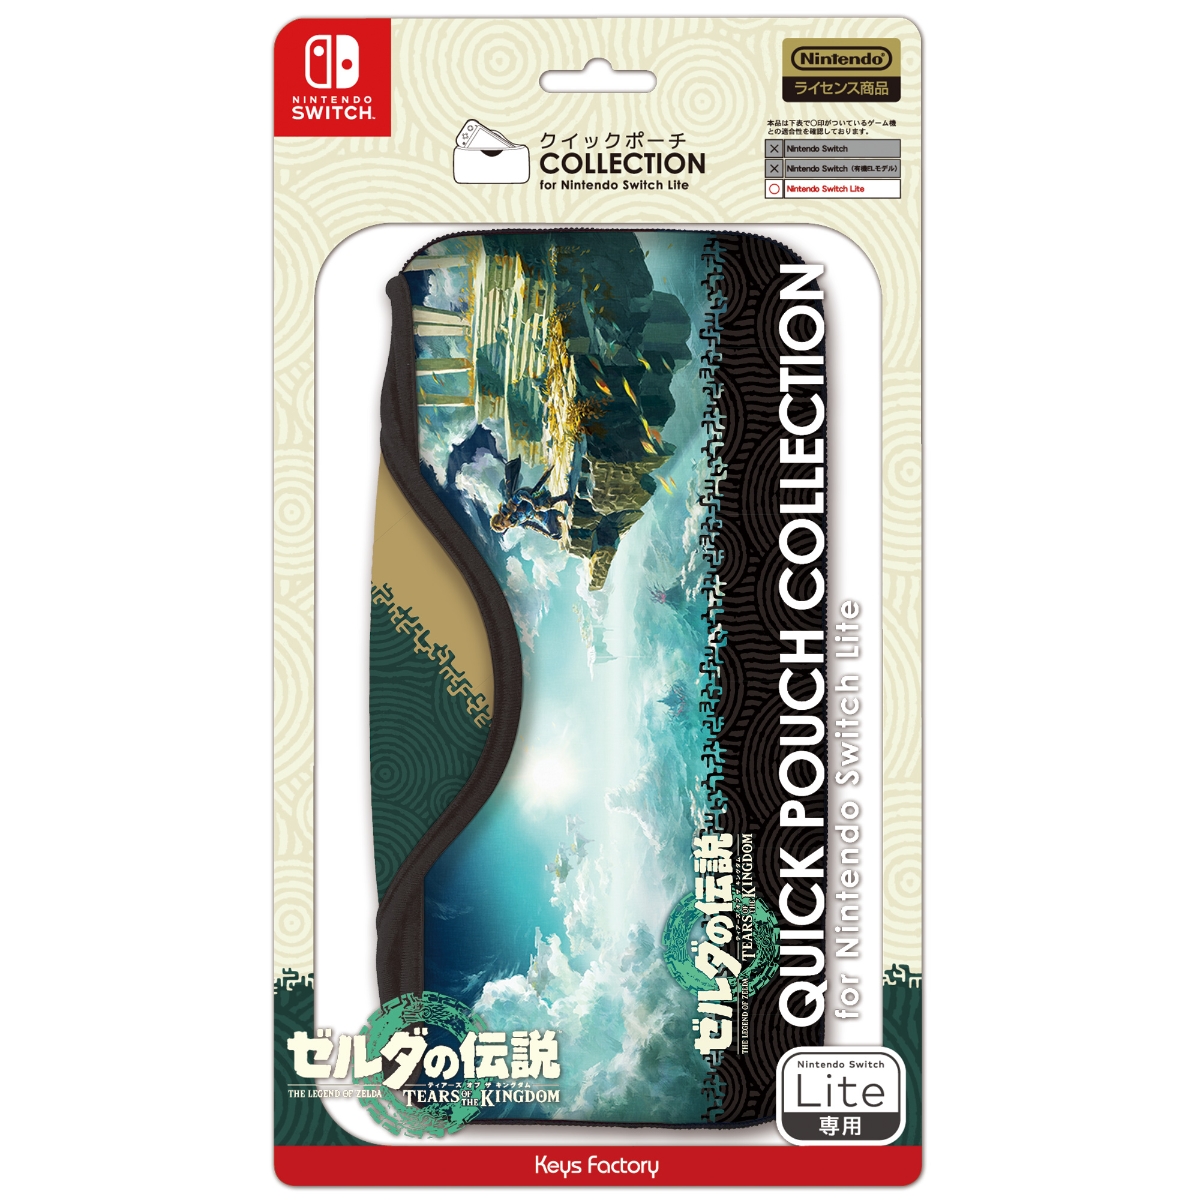 クイックポーチ COLLECTION for Nintendo Switch Lite (ゼルダの伝説 ティアーズ オブ ザ キングダム)画像